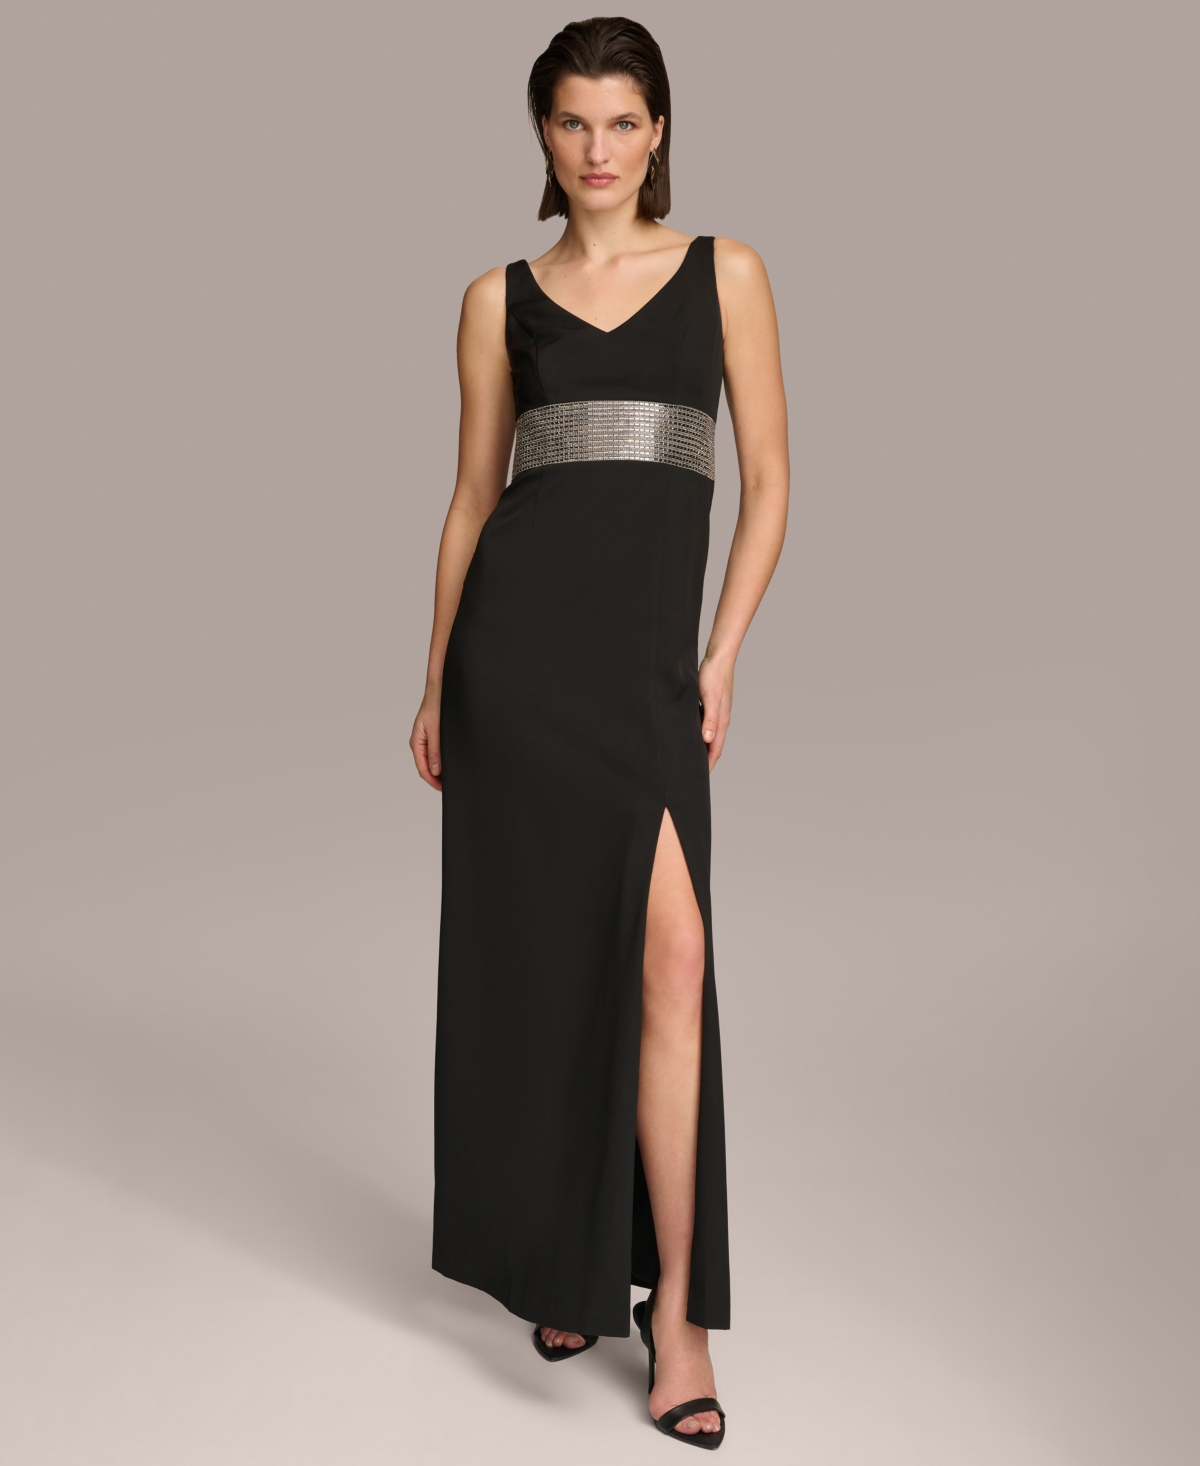 Women's Embellished V-Neck Gown - Black/Silver